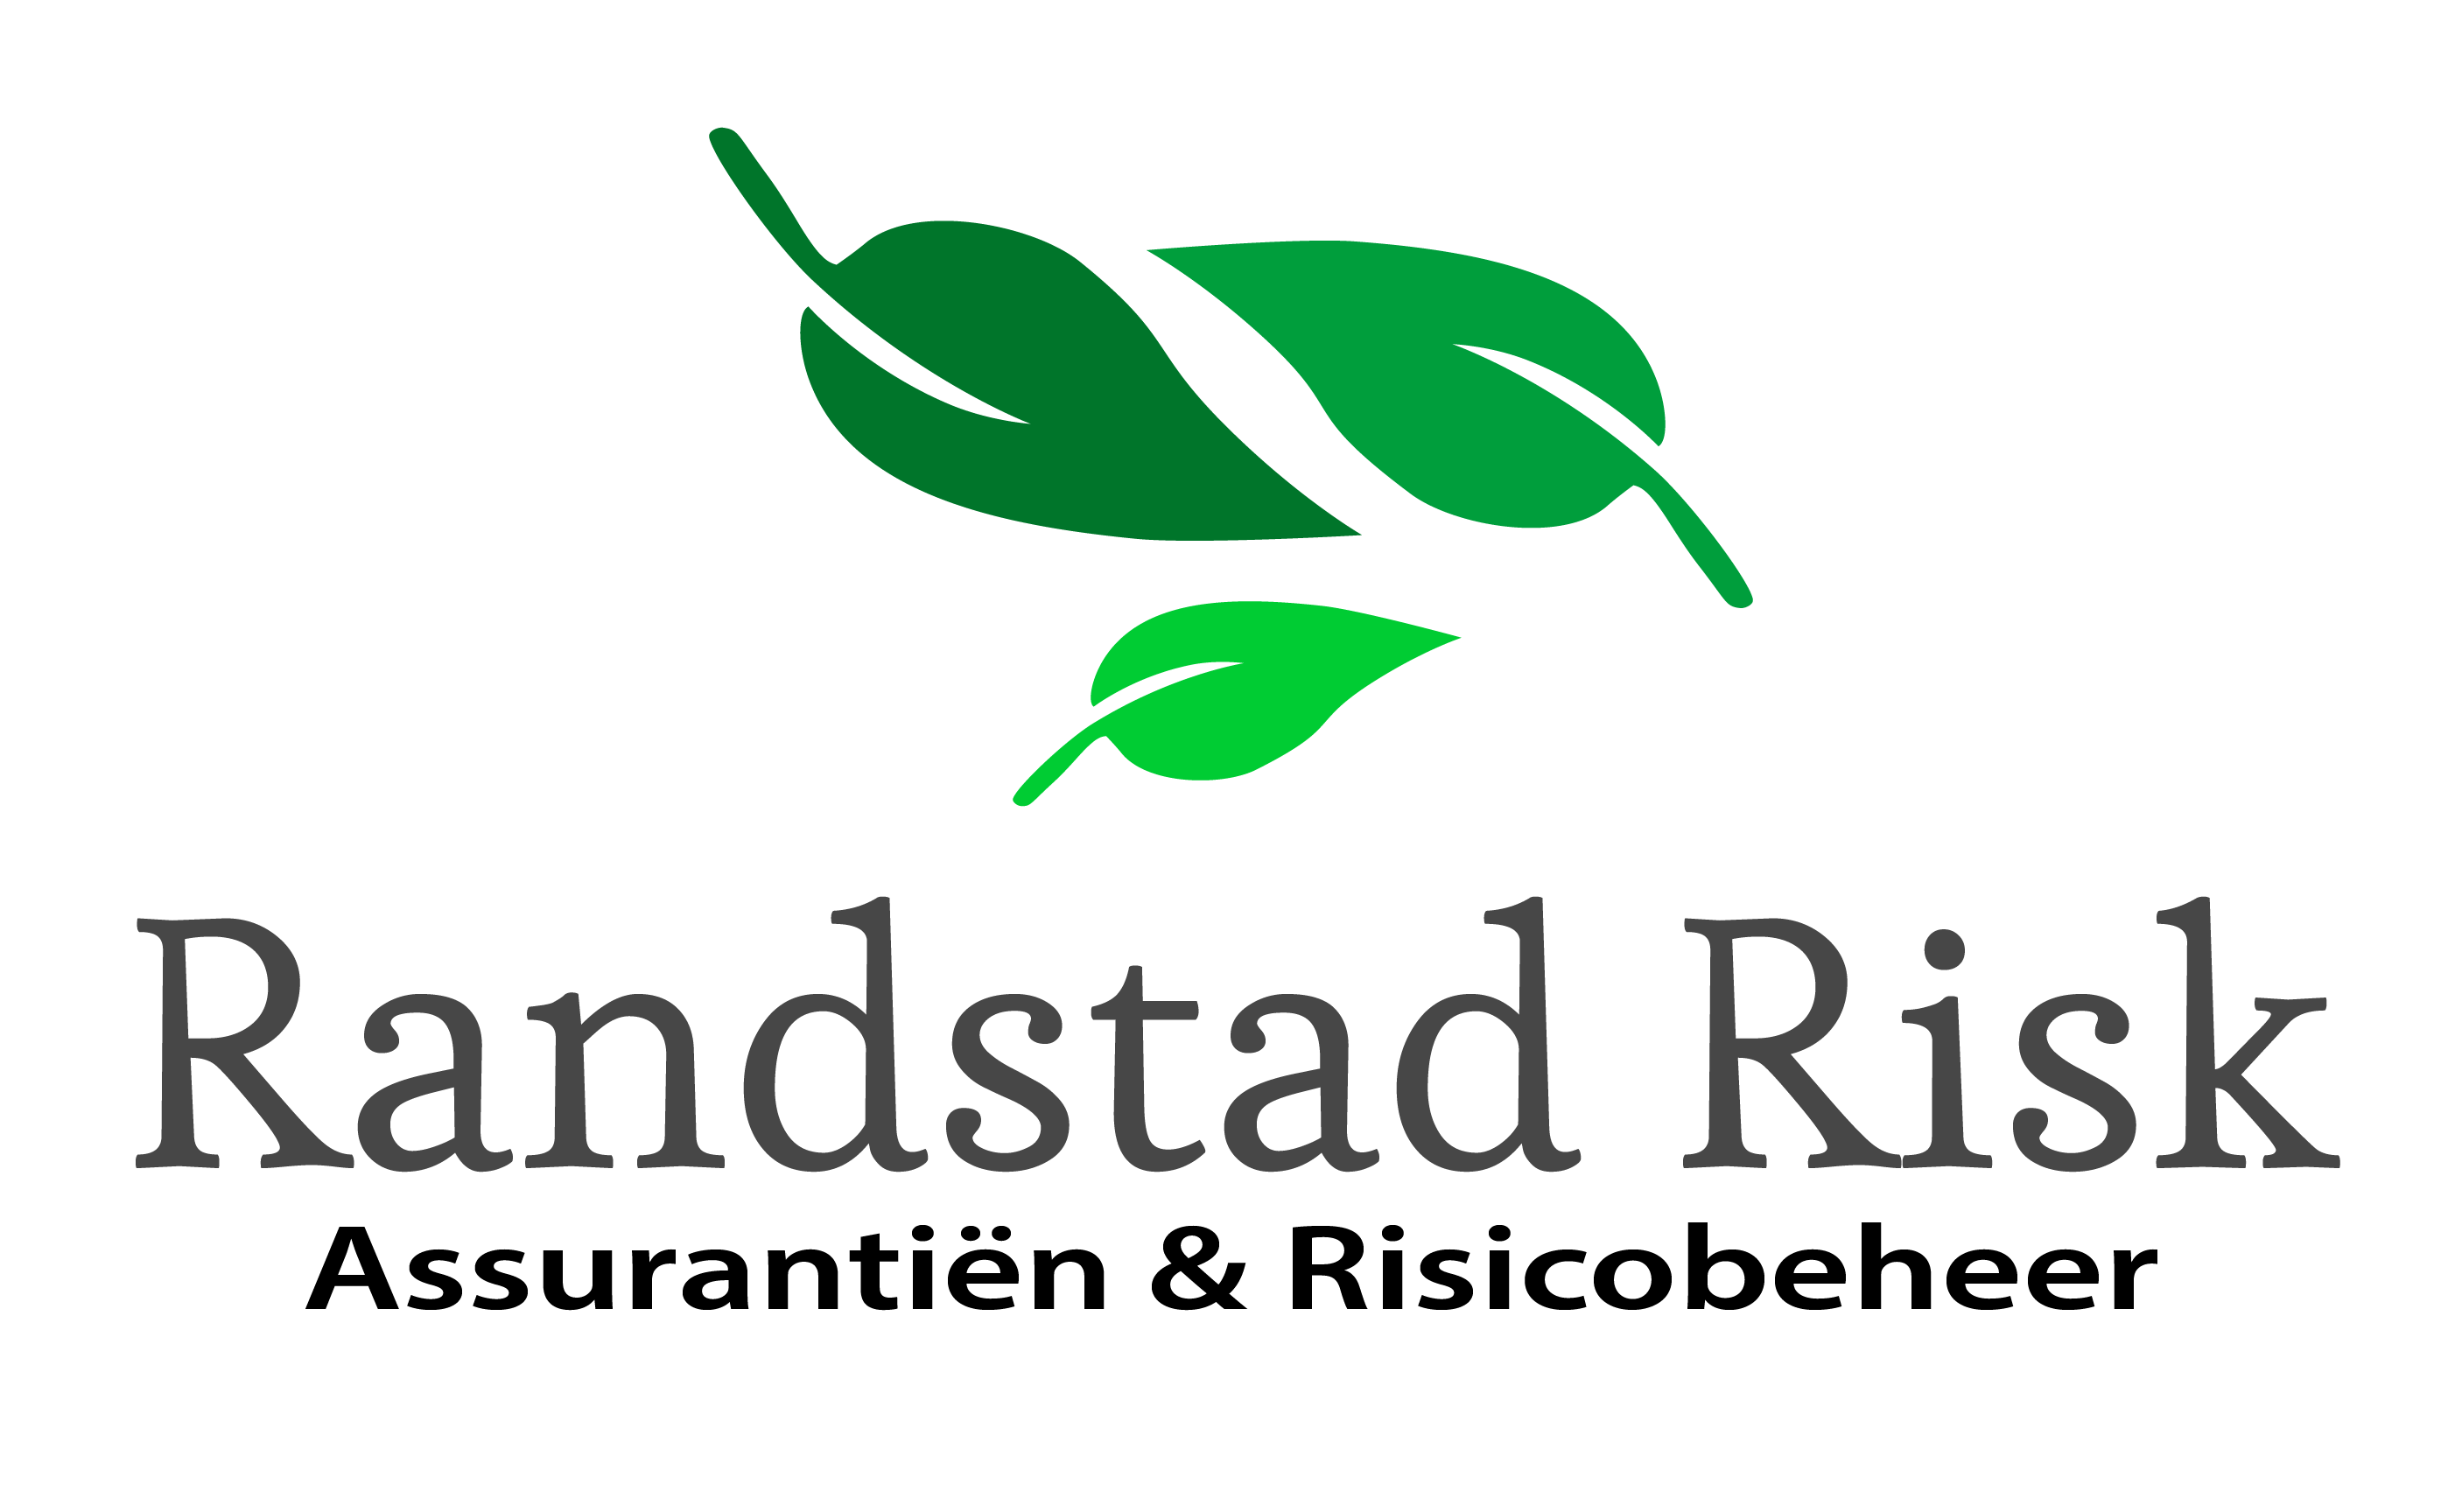 Randstad Risk